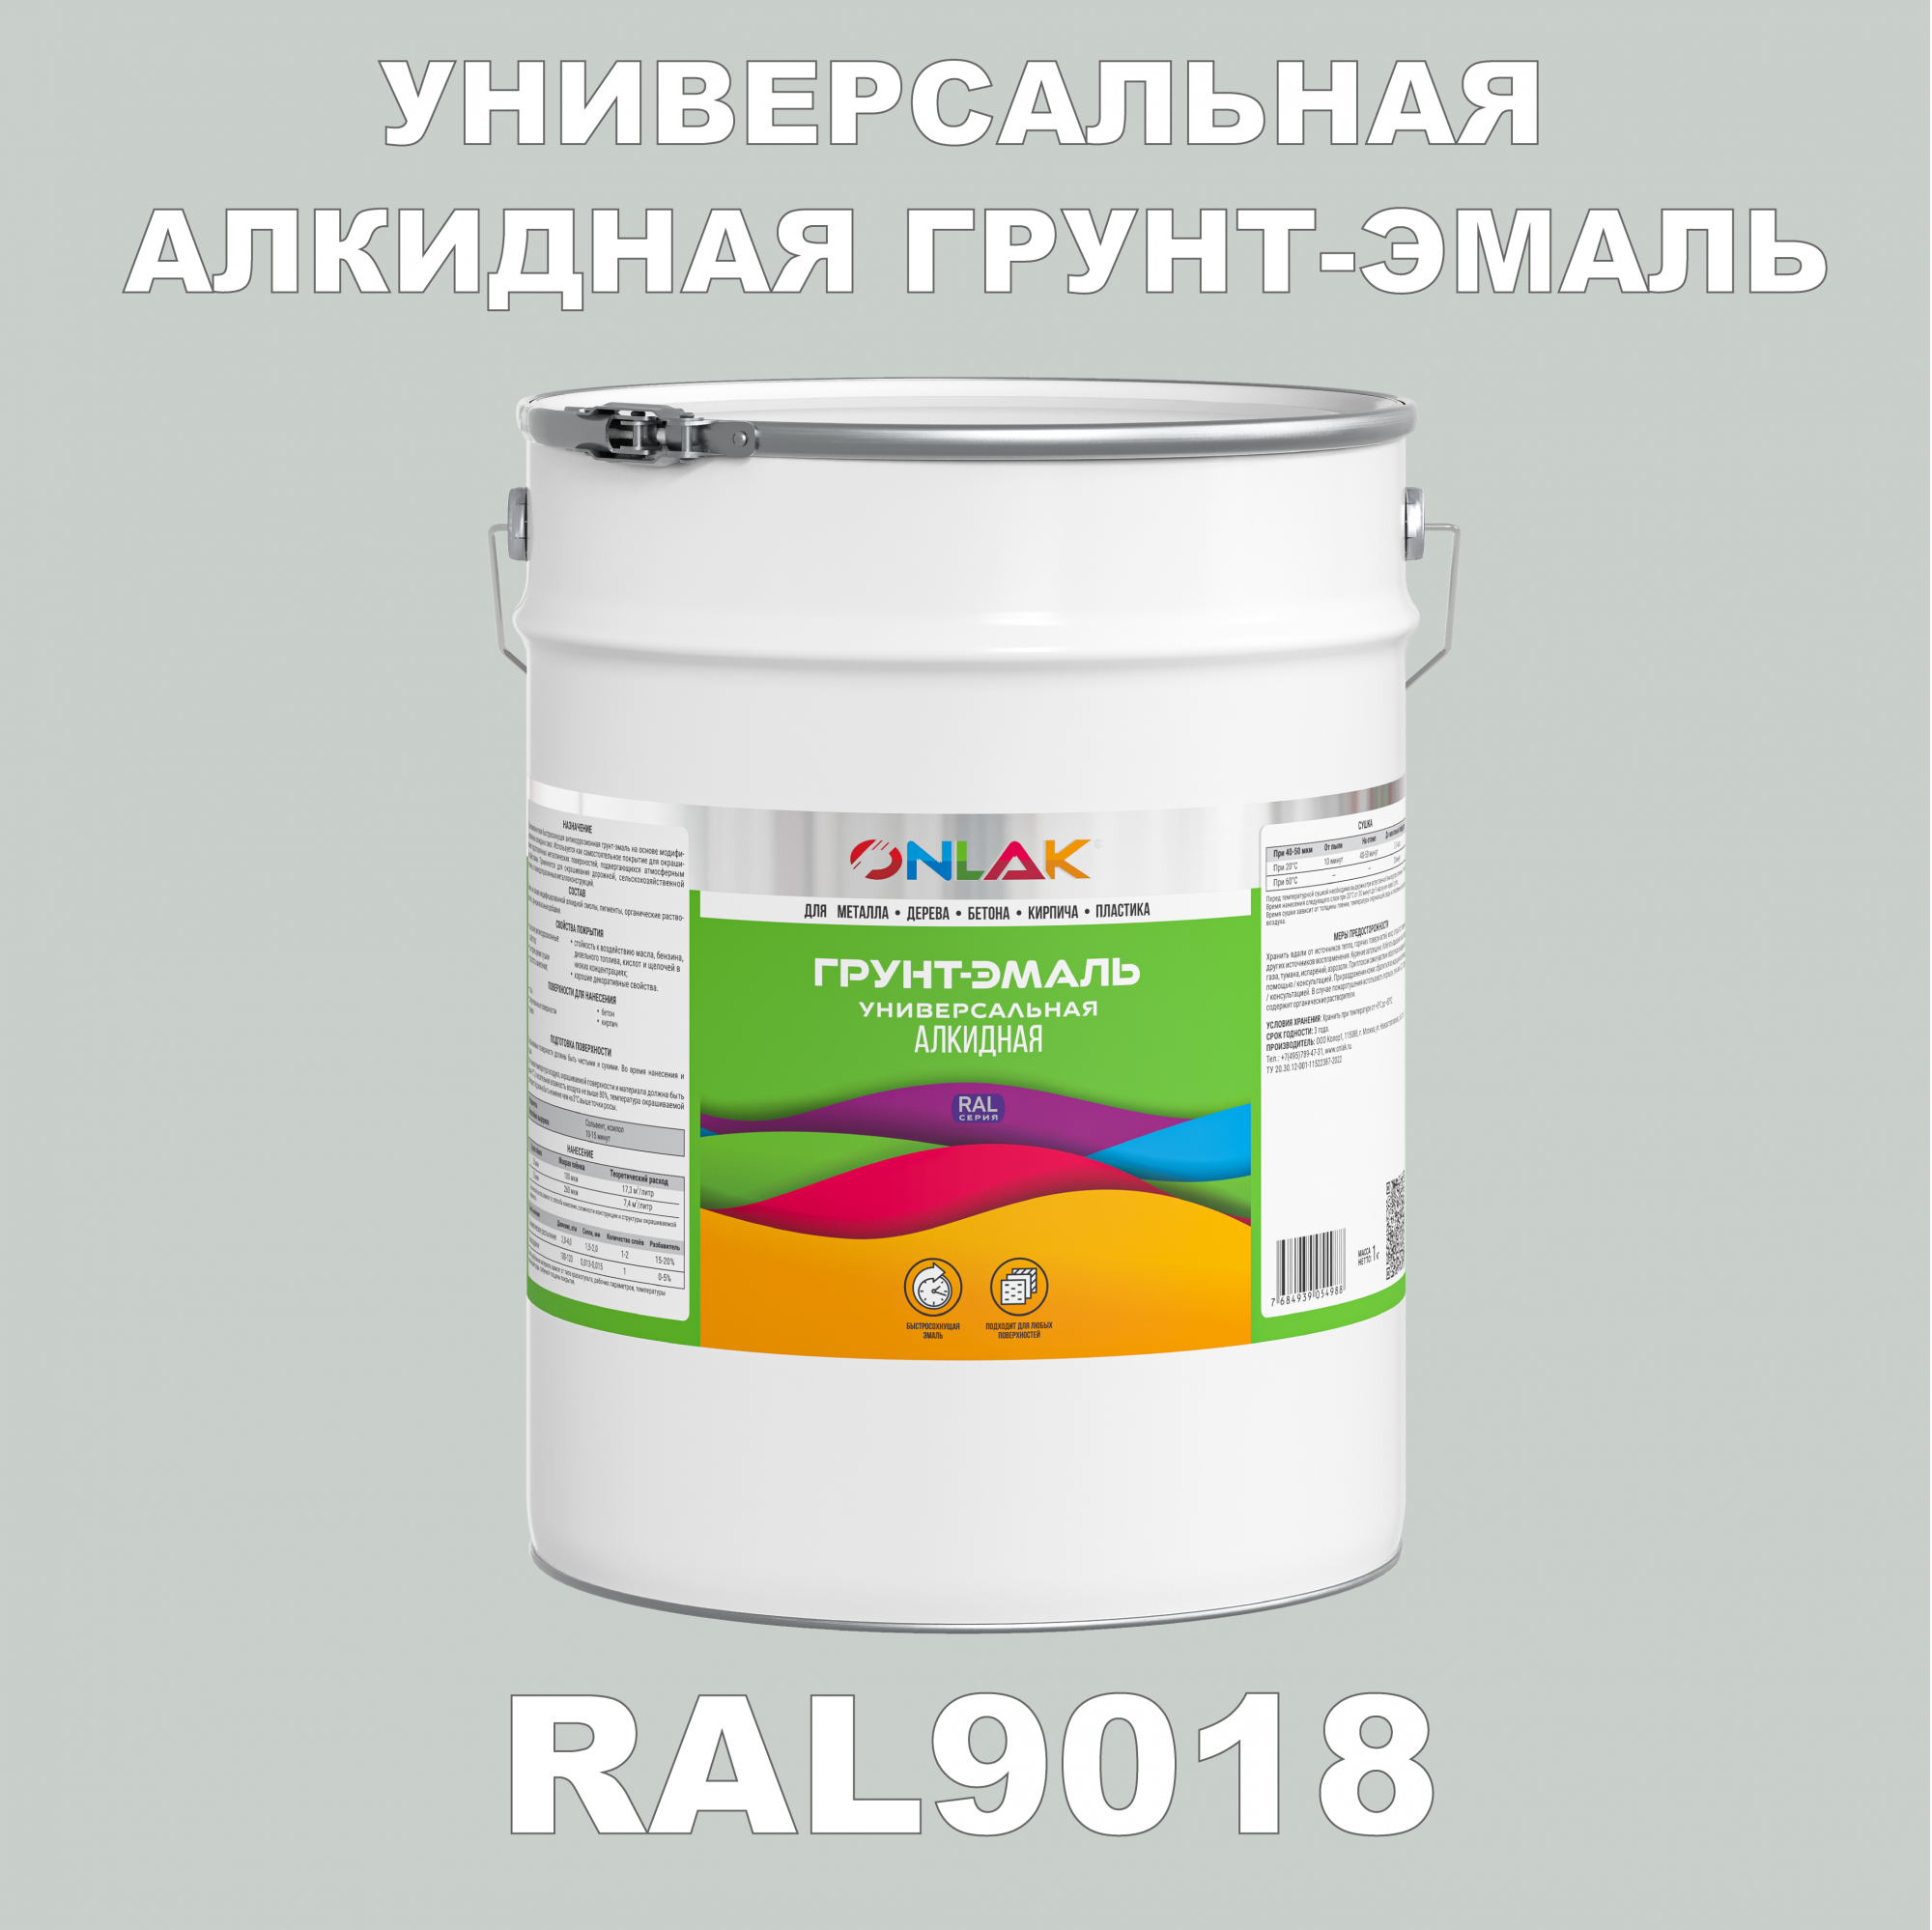 Грунт-эмаль ONLAK 1К RAL9018 антикоррозионная алкидная по металлу по ржавчине 20 кг грунт эмаль yollo по ржавчине алкидная зеленая 0 9 кг